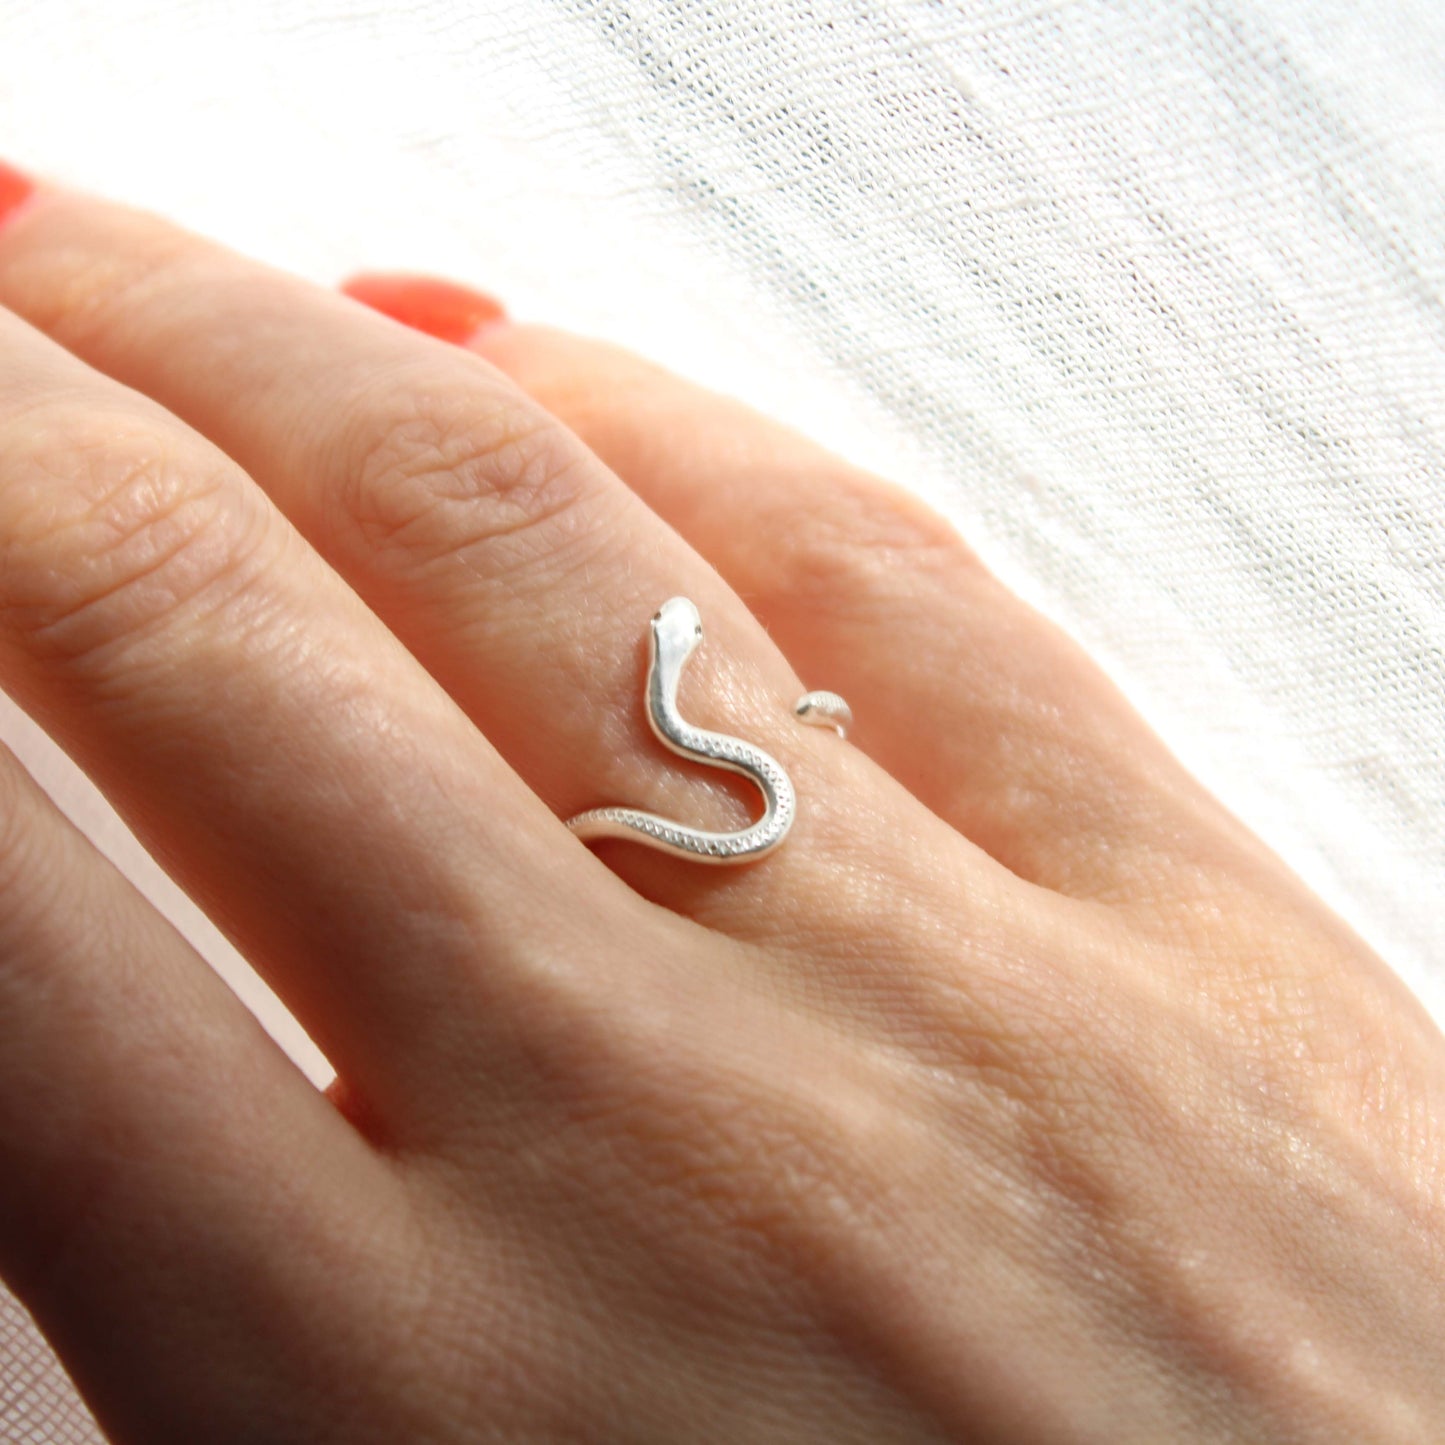 Fluid Snake Ring - Silver